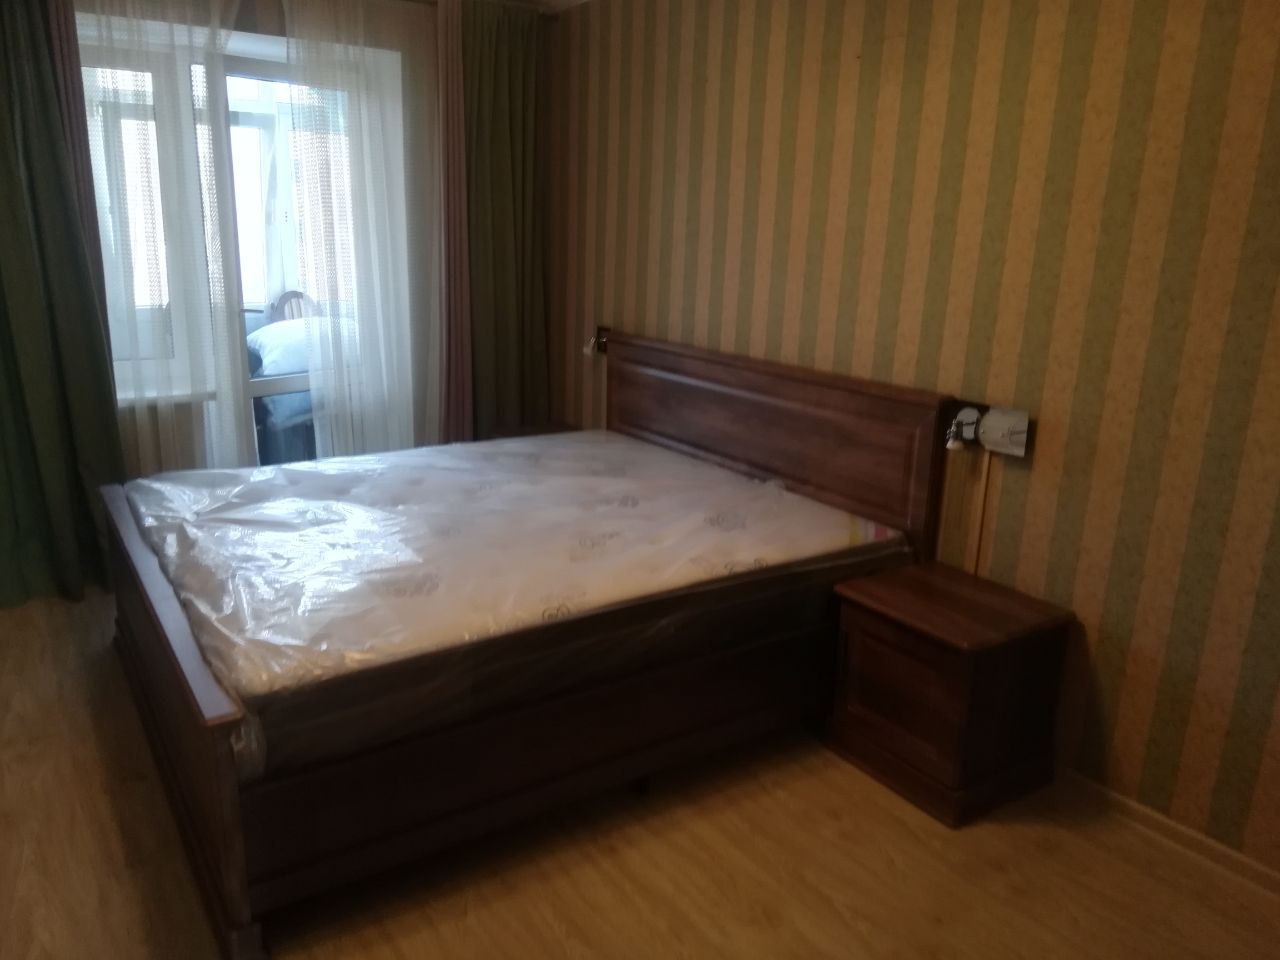 Полутораспальная кровать "Прованс" 120 х 200 с подъемным мех-ом цвет дуб/коньяк изножье низкое